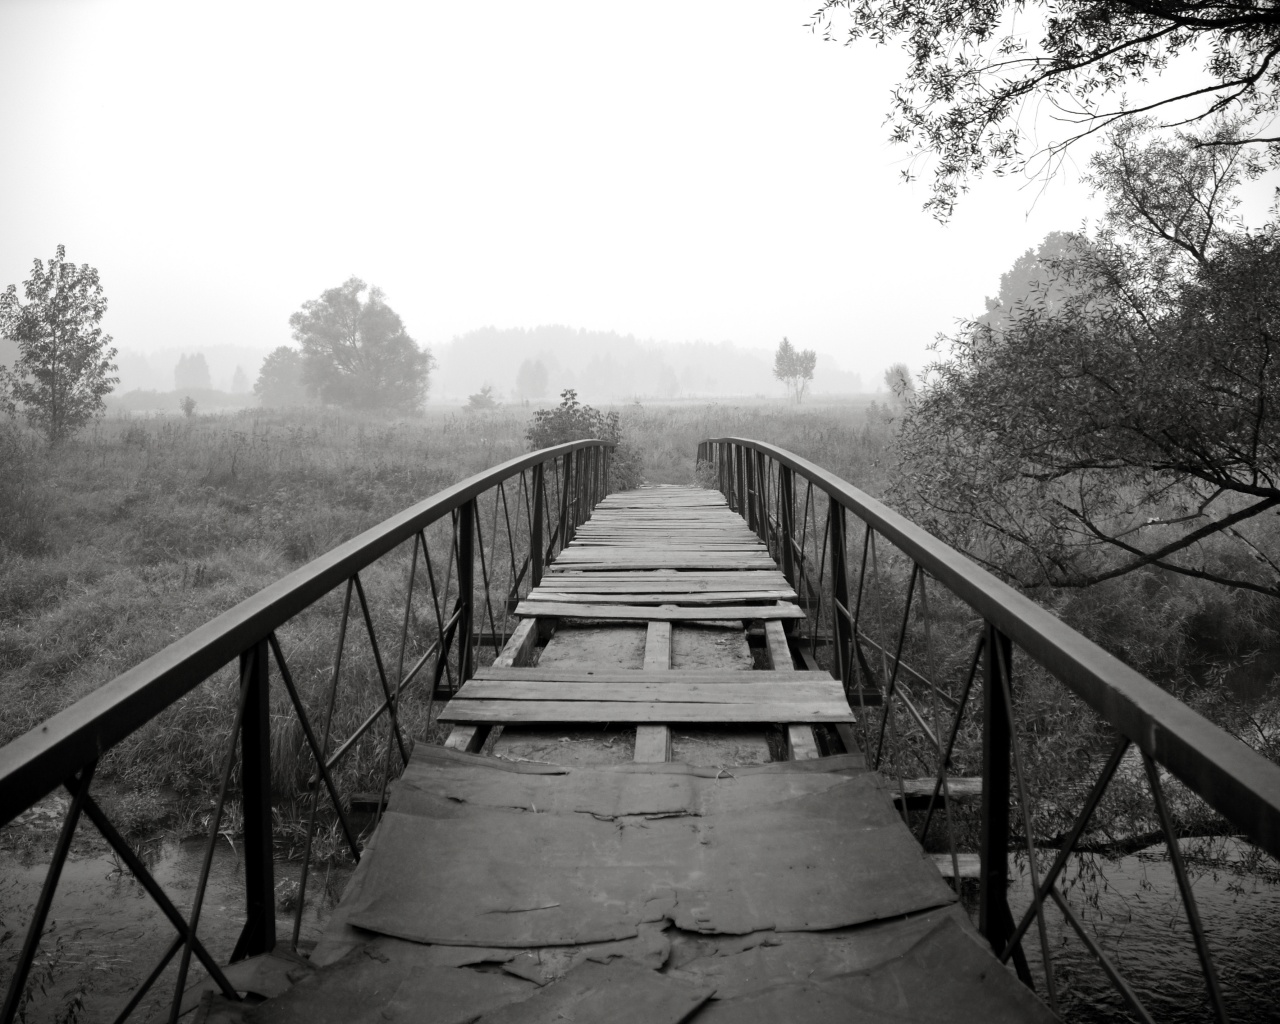 Старый мост на черно-белом фото обои